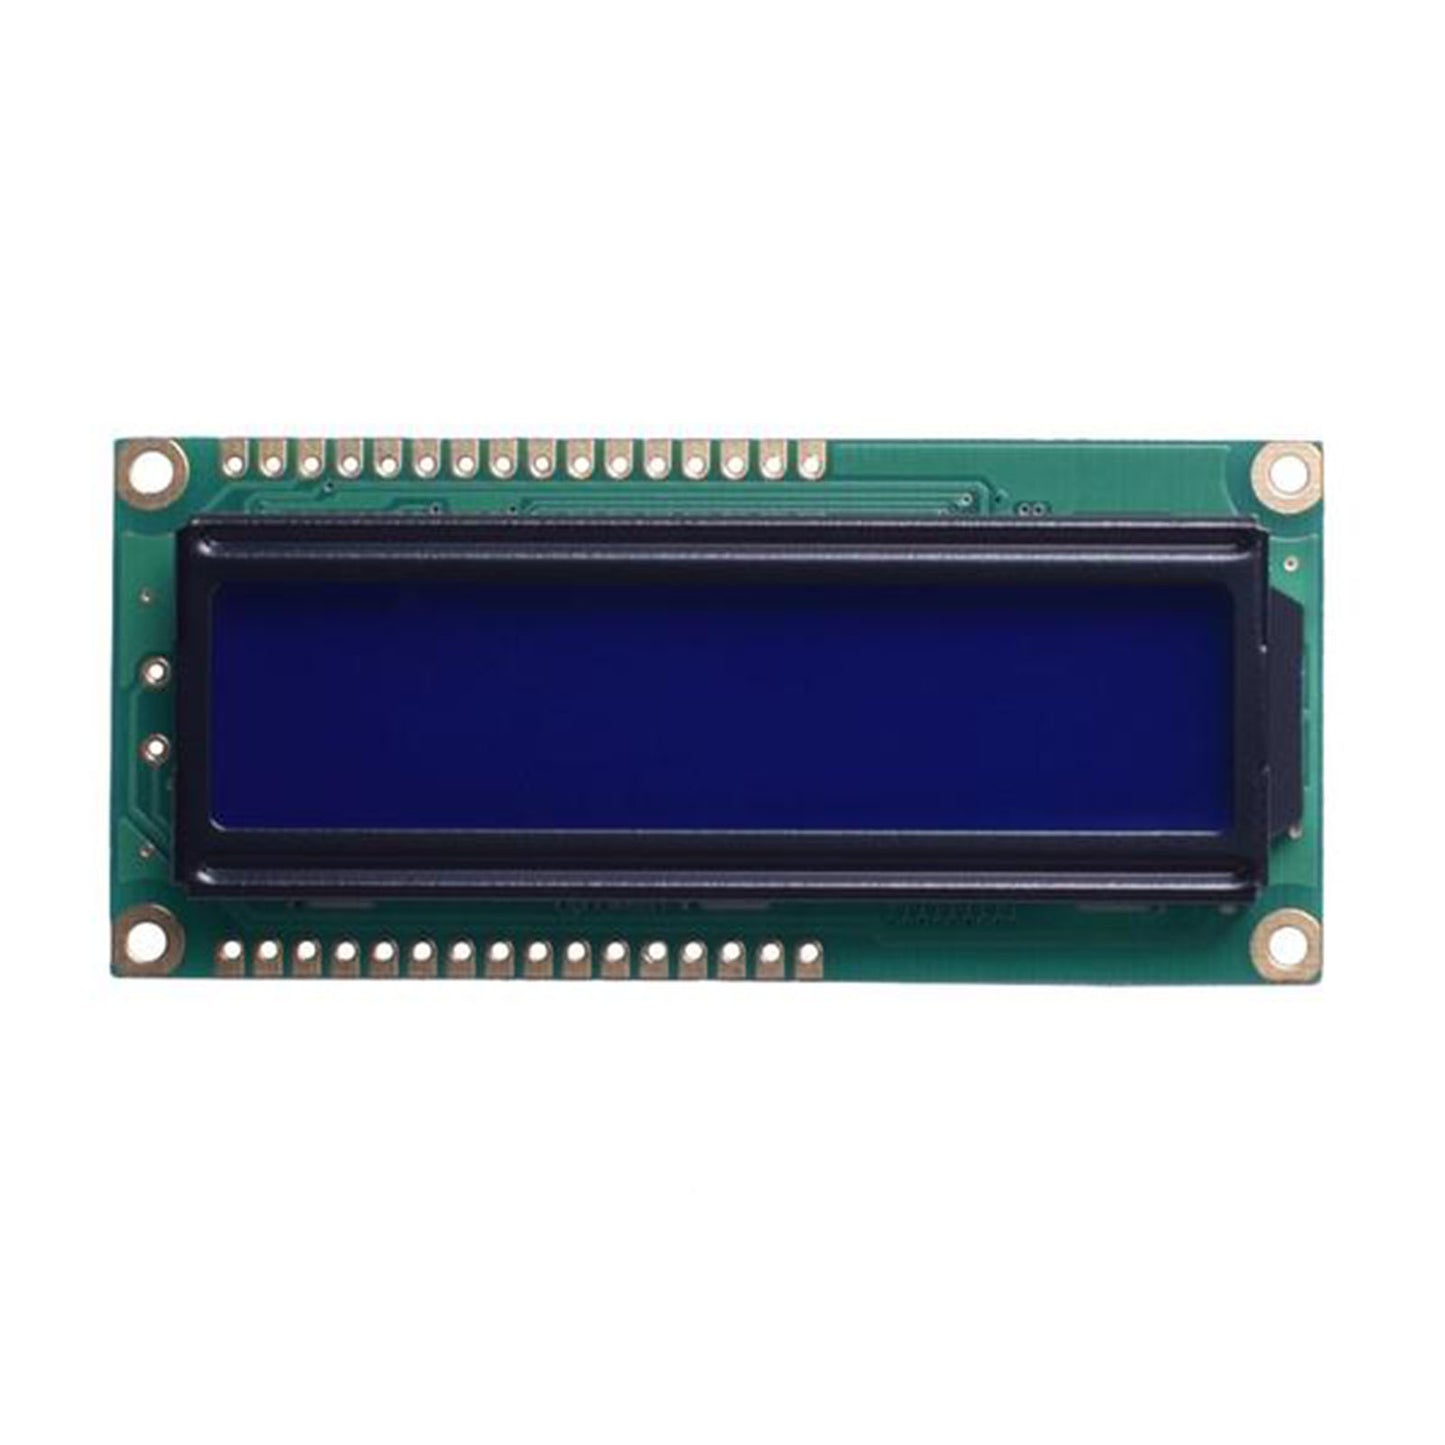 DisplayModule 16x2 Character LCD - MCU